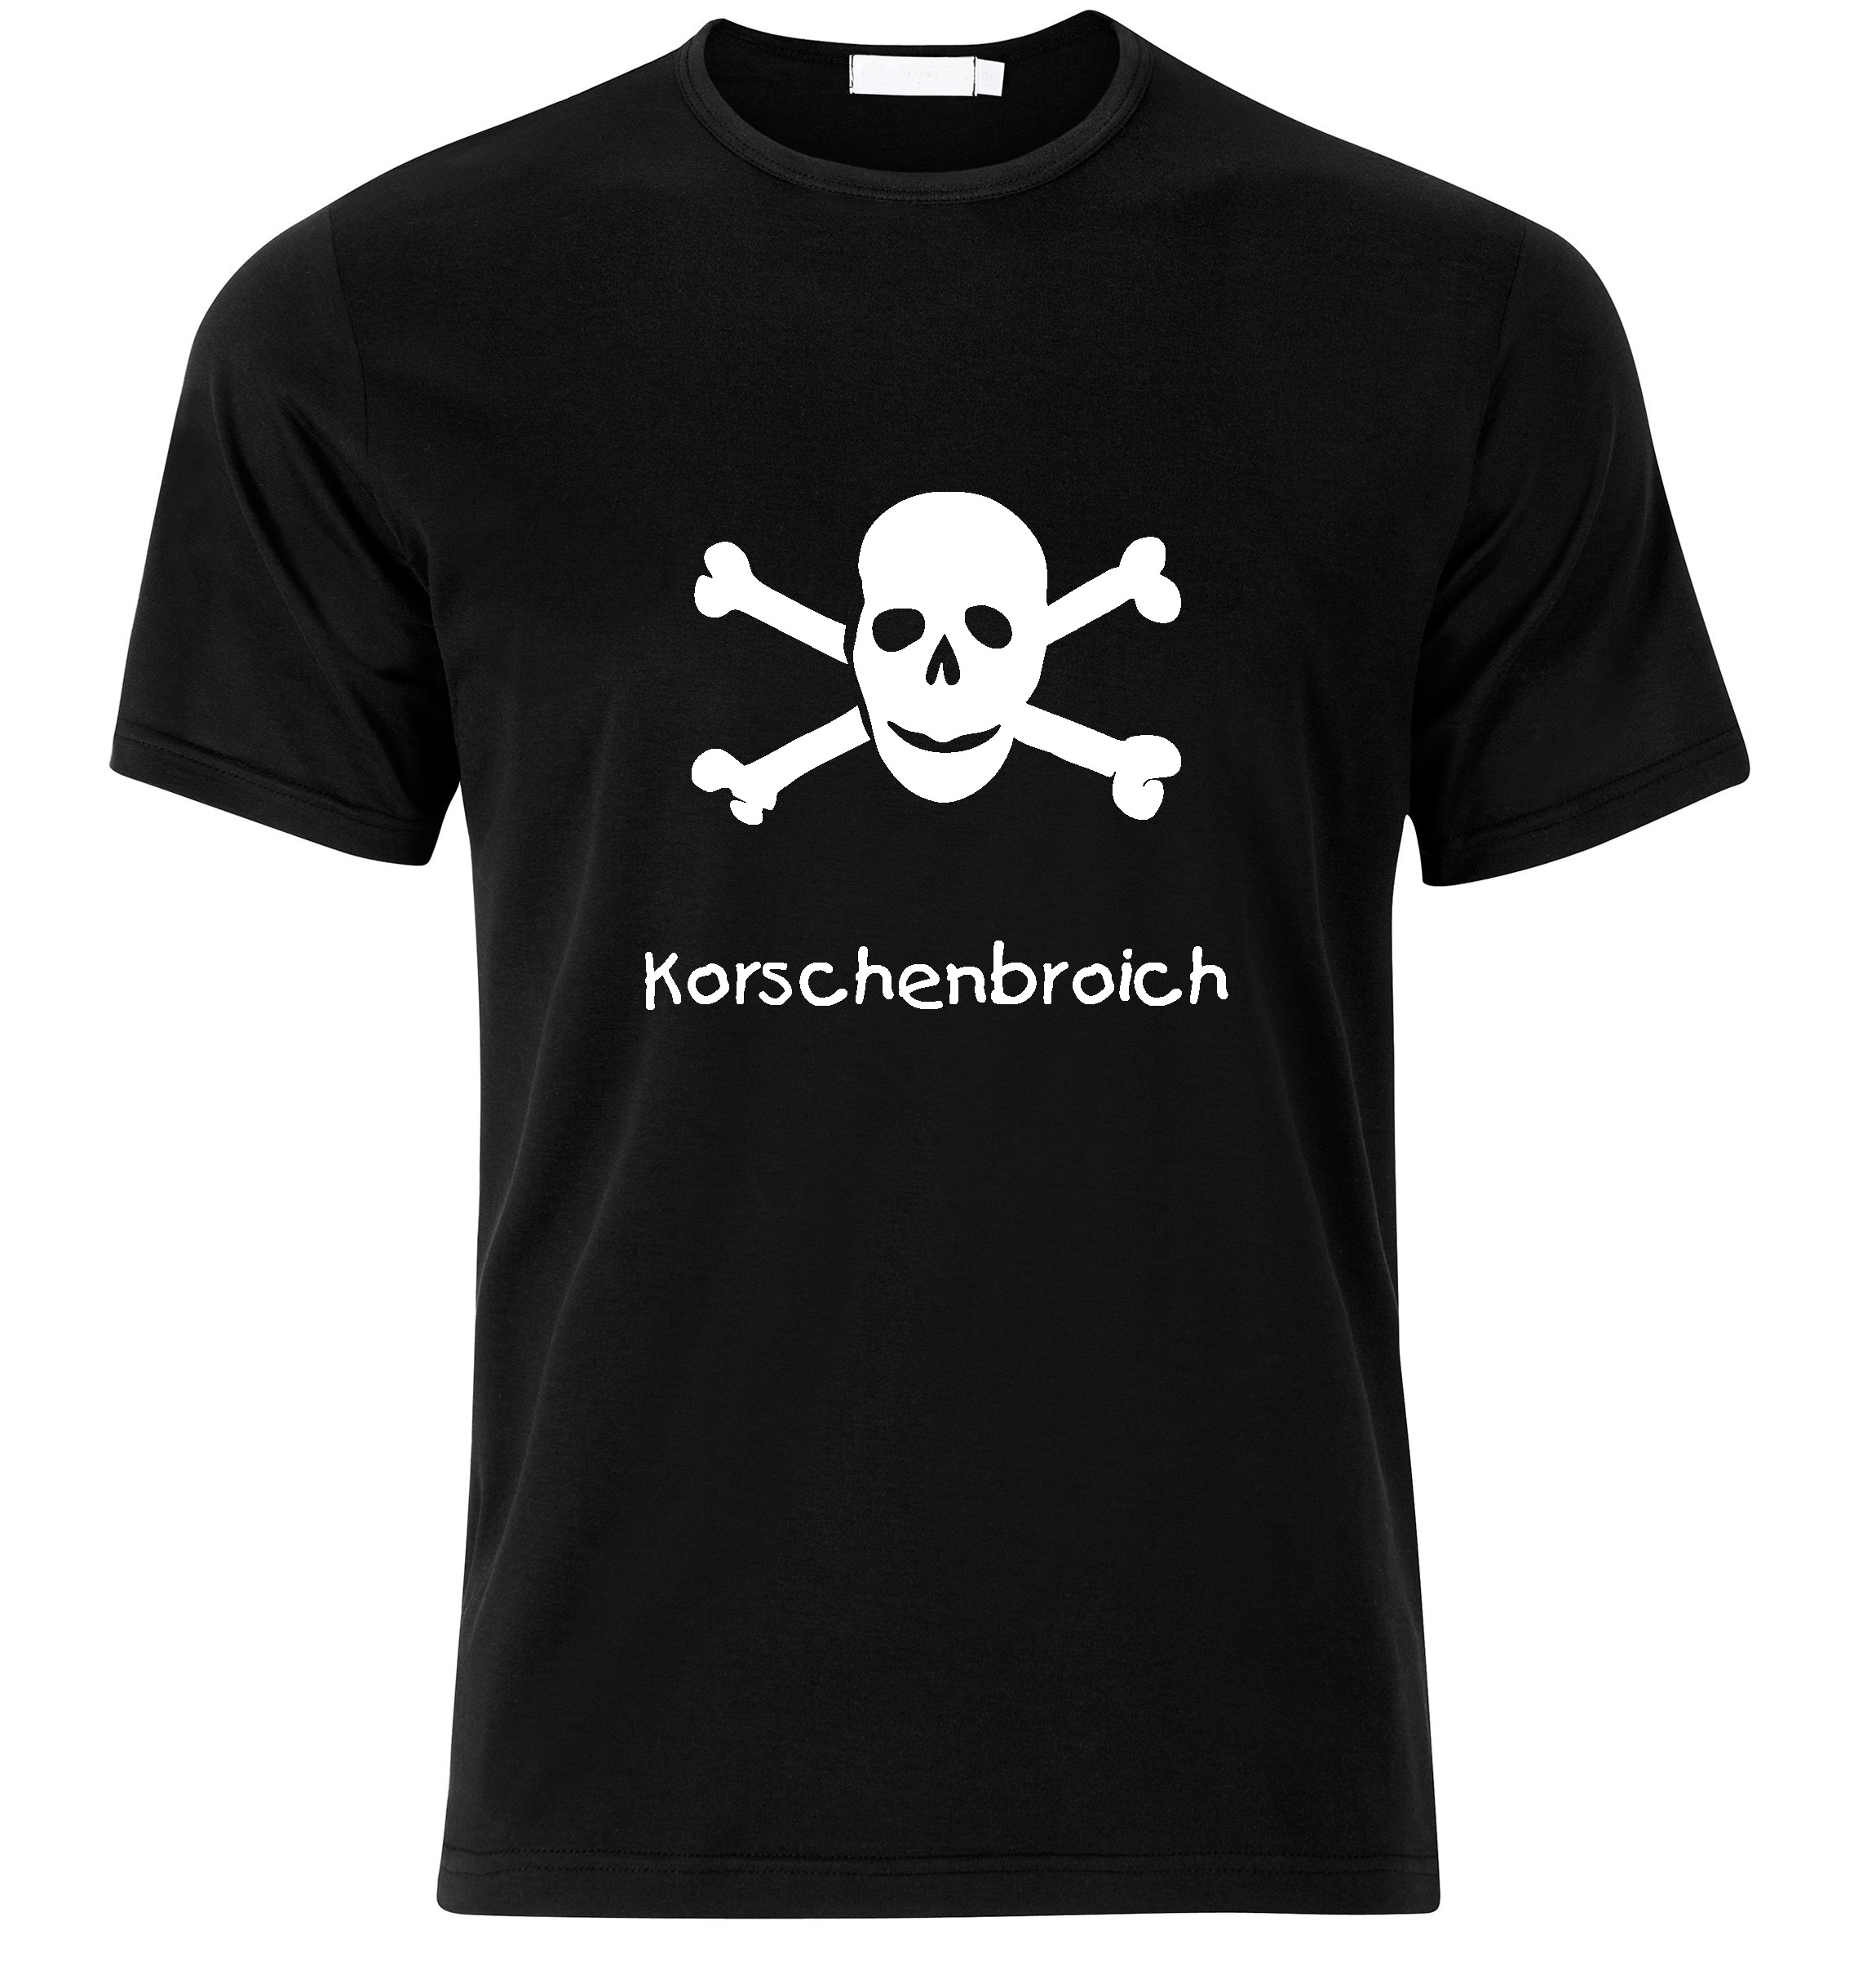 T-Shirt Korschenbroich Jolly Roger, Totenkopf